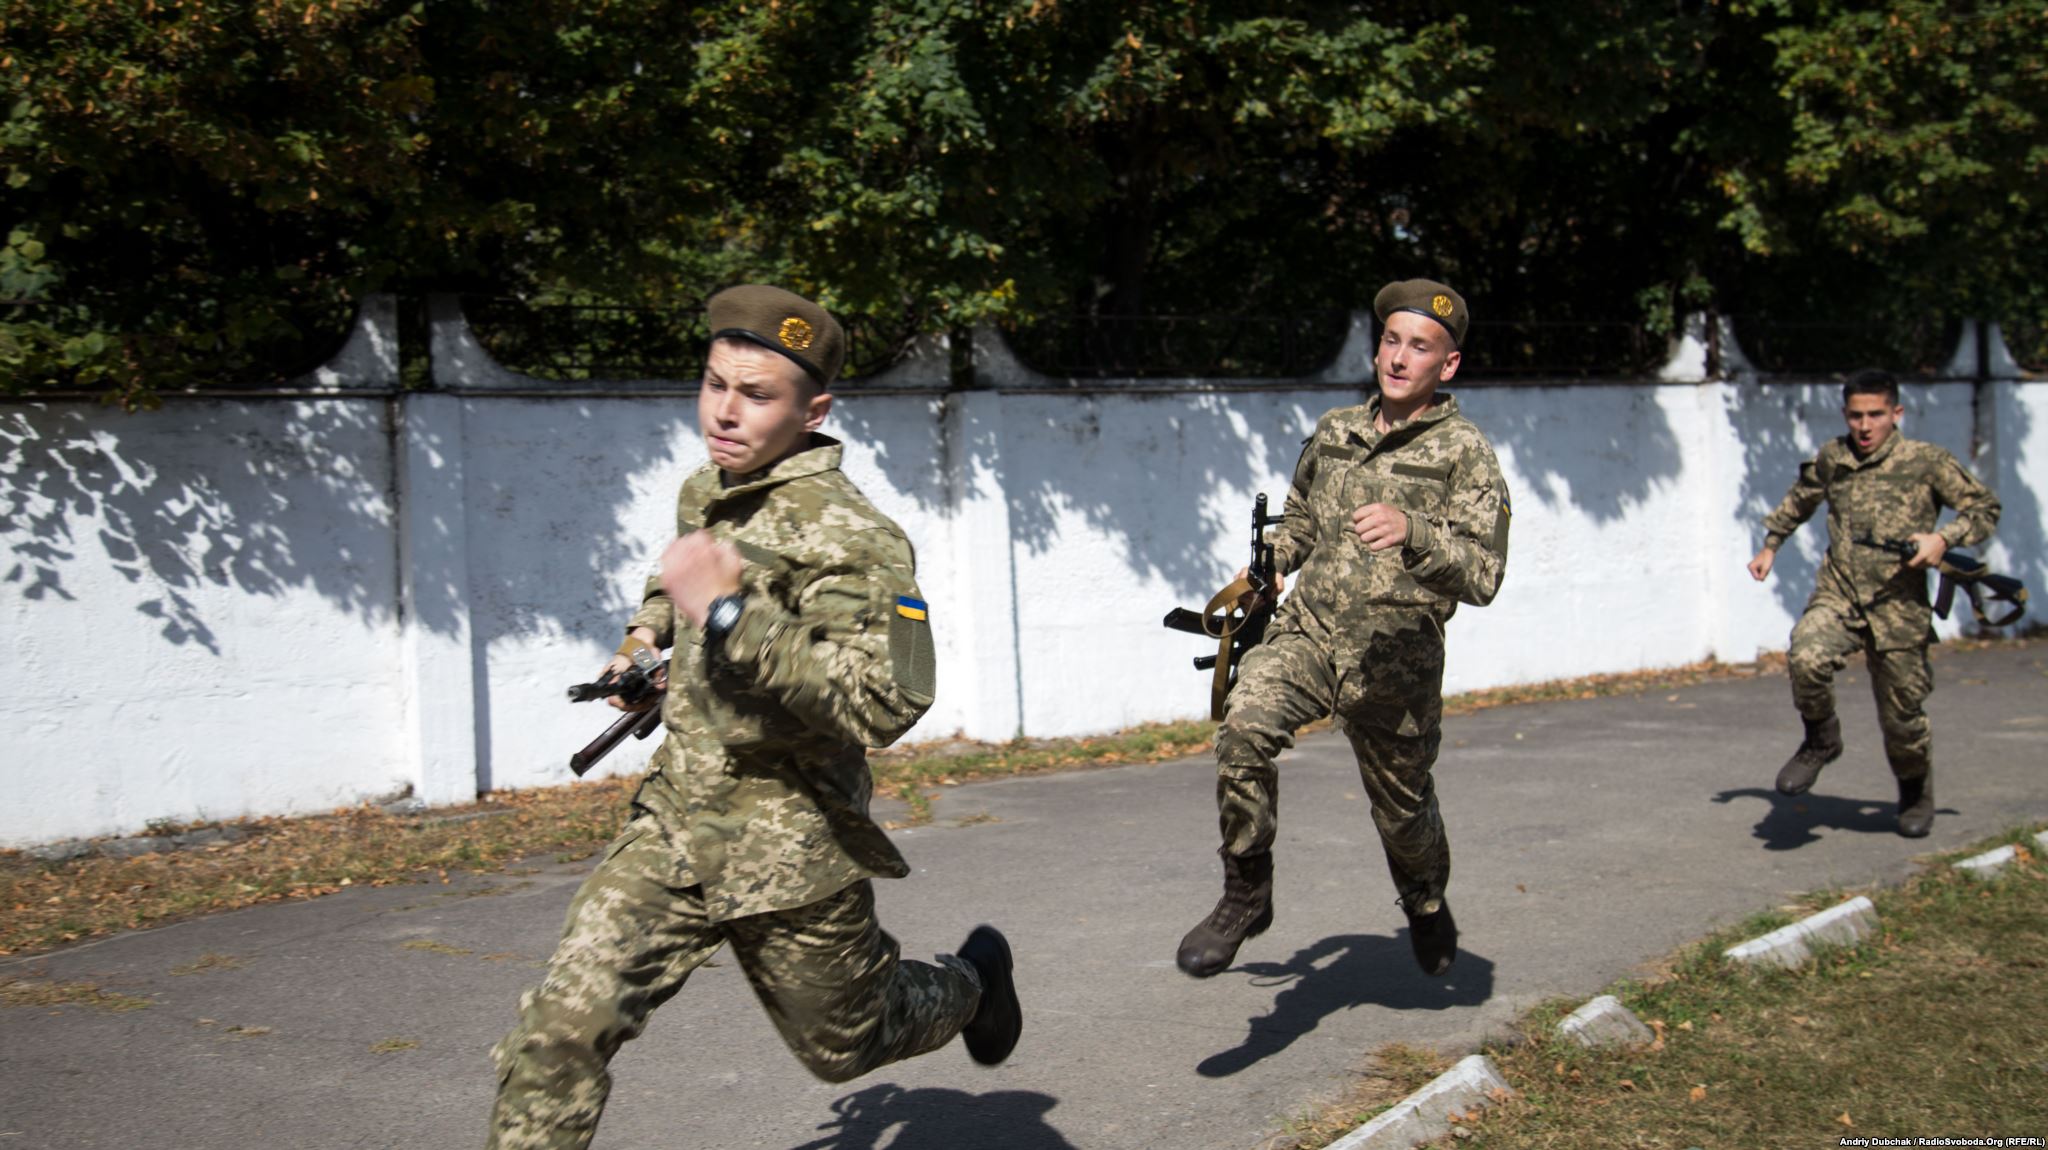 Військова естафета: біг зі зброєю (фотограф Данило Дубчак / Danylo Dubchak)